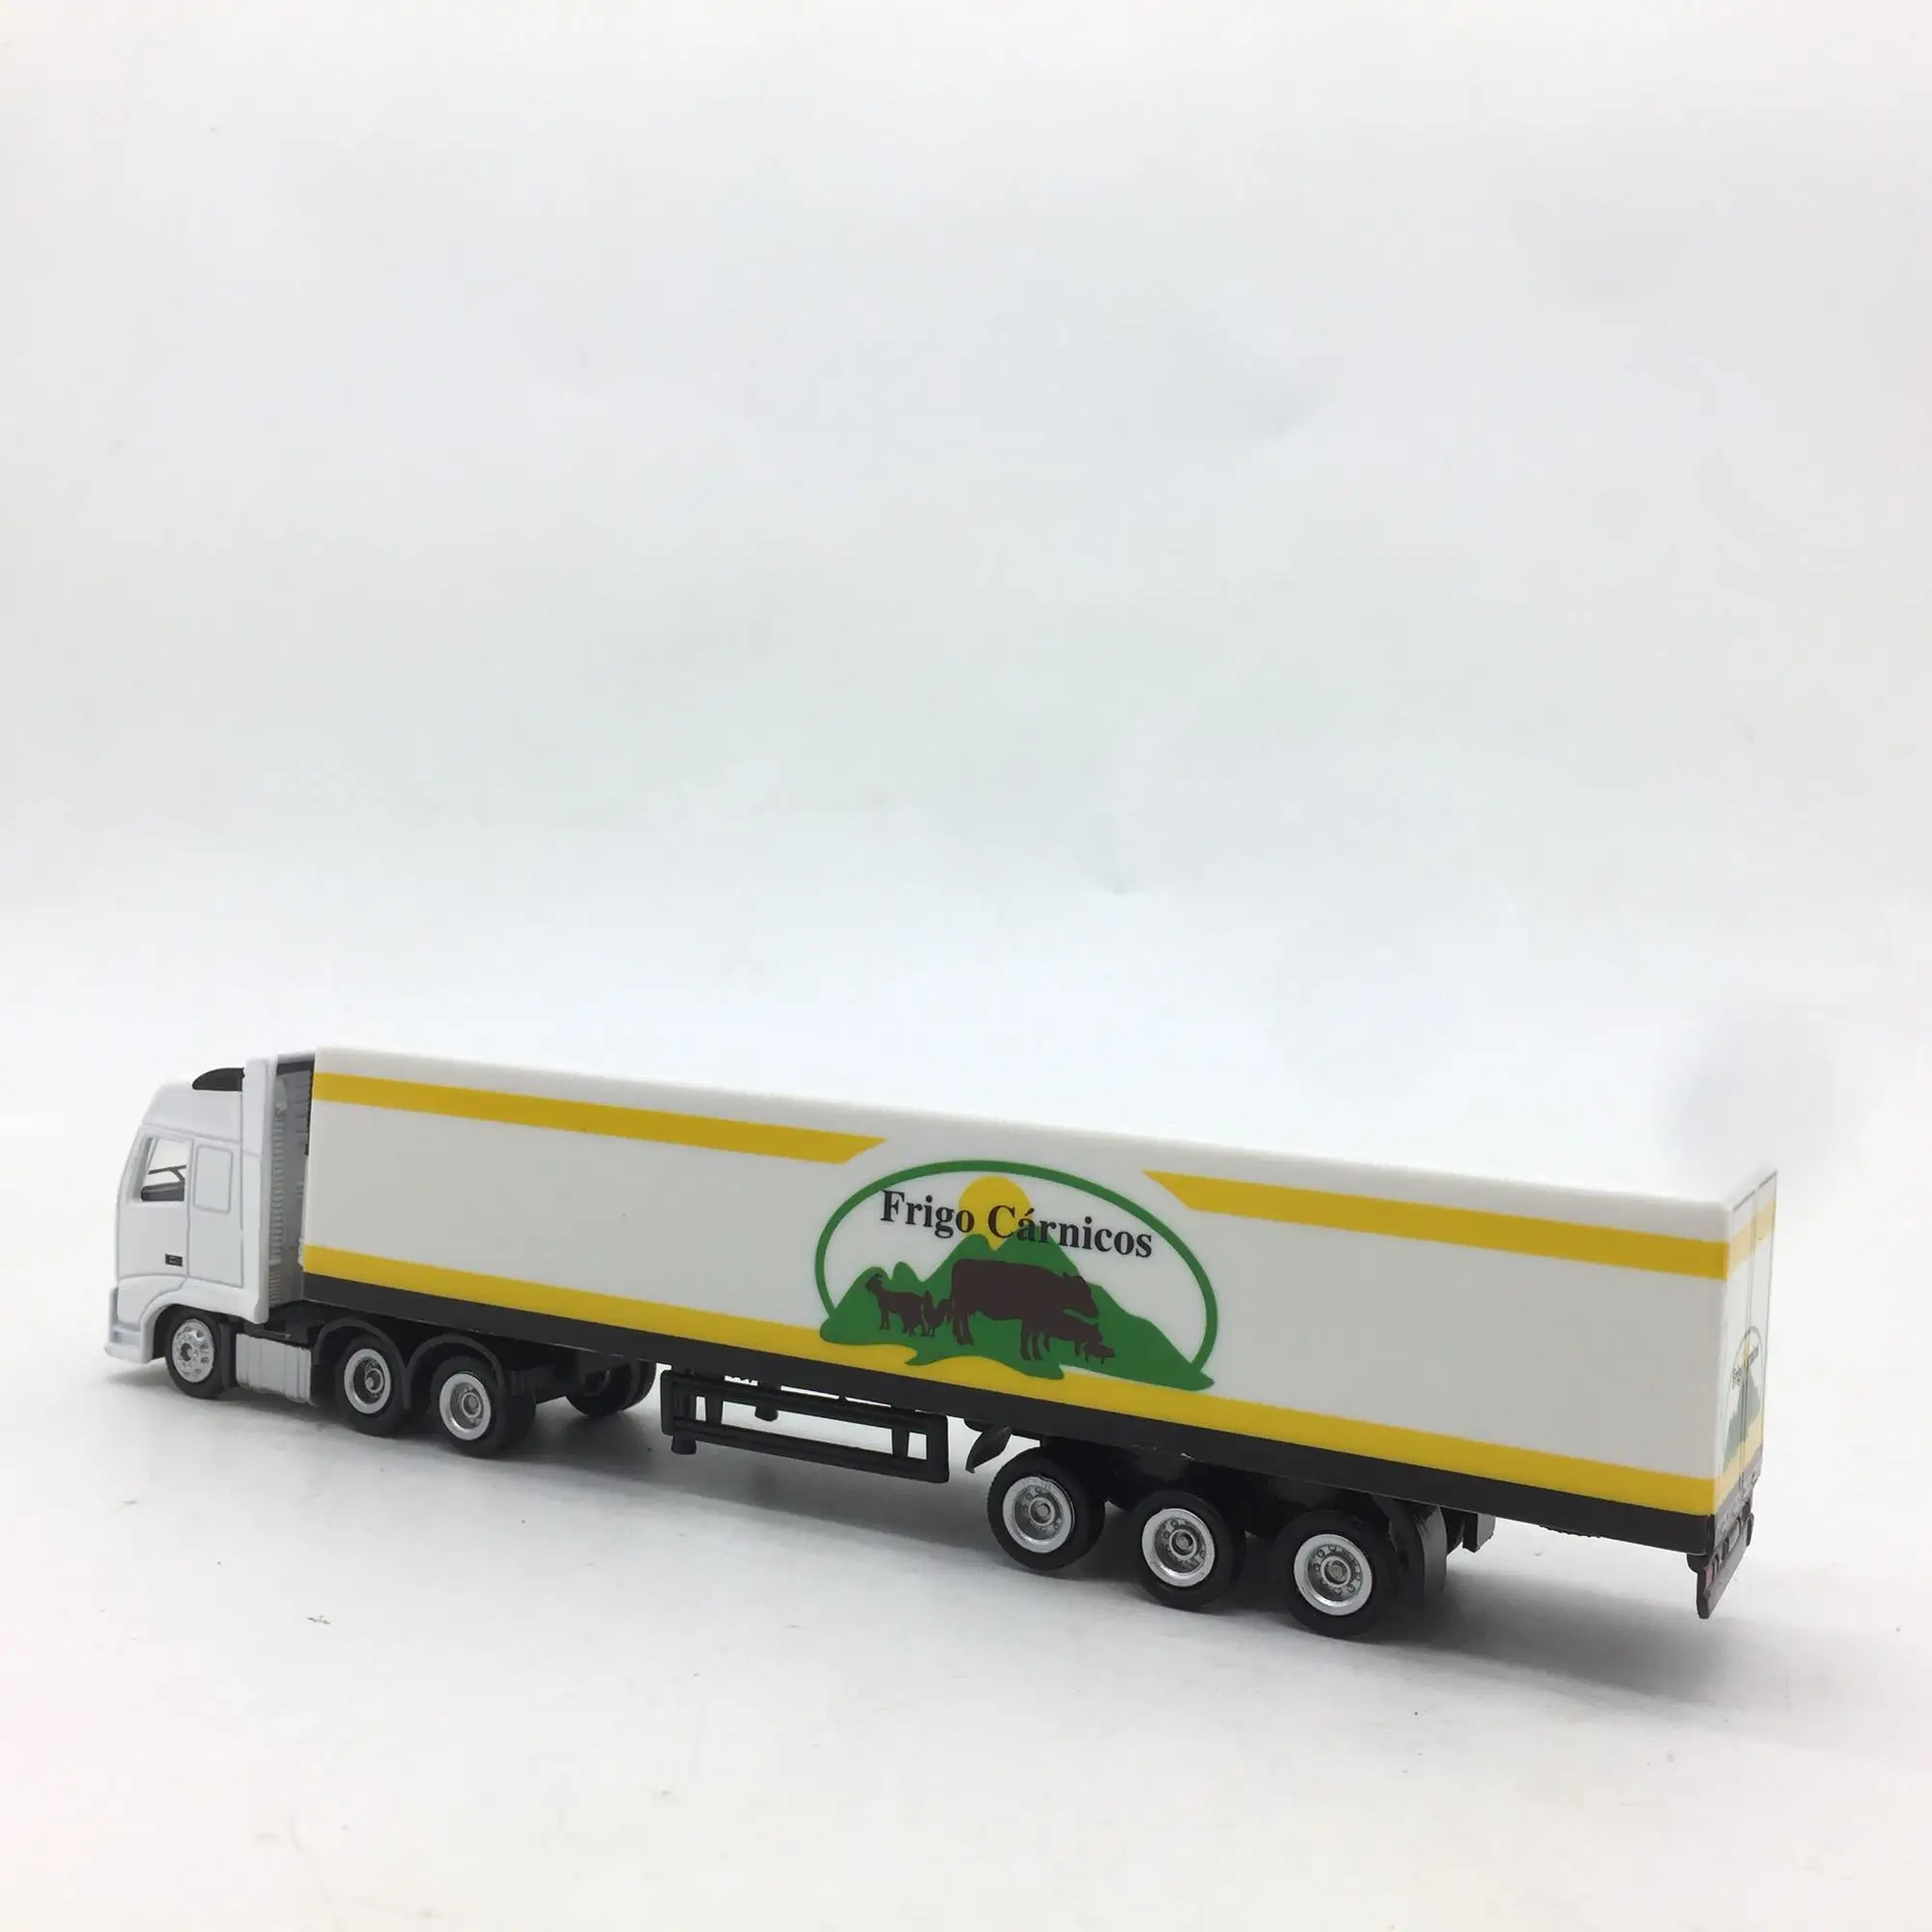 1/87 Новые Специальные Литые металлические настольные демонстрационные модели для грузовиков длиной около 20 см, игрушки для детей